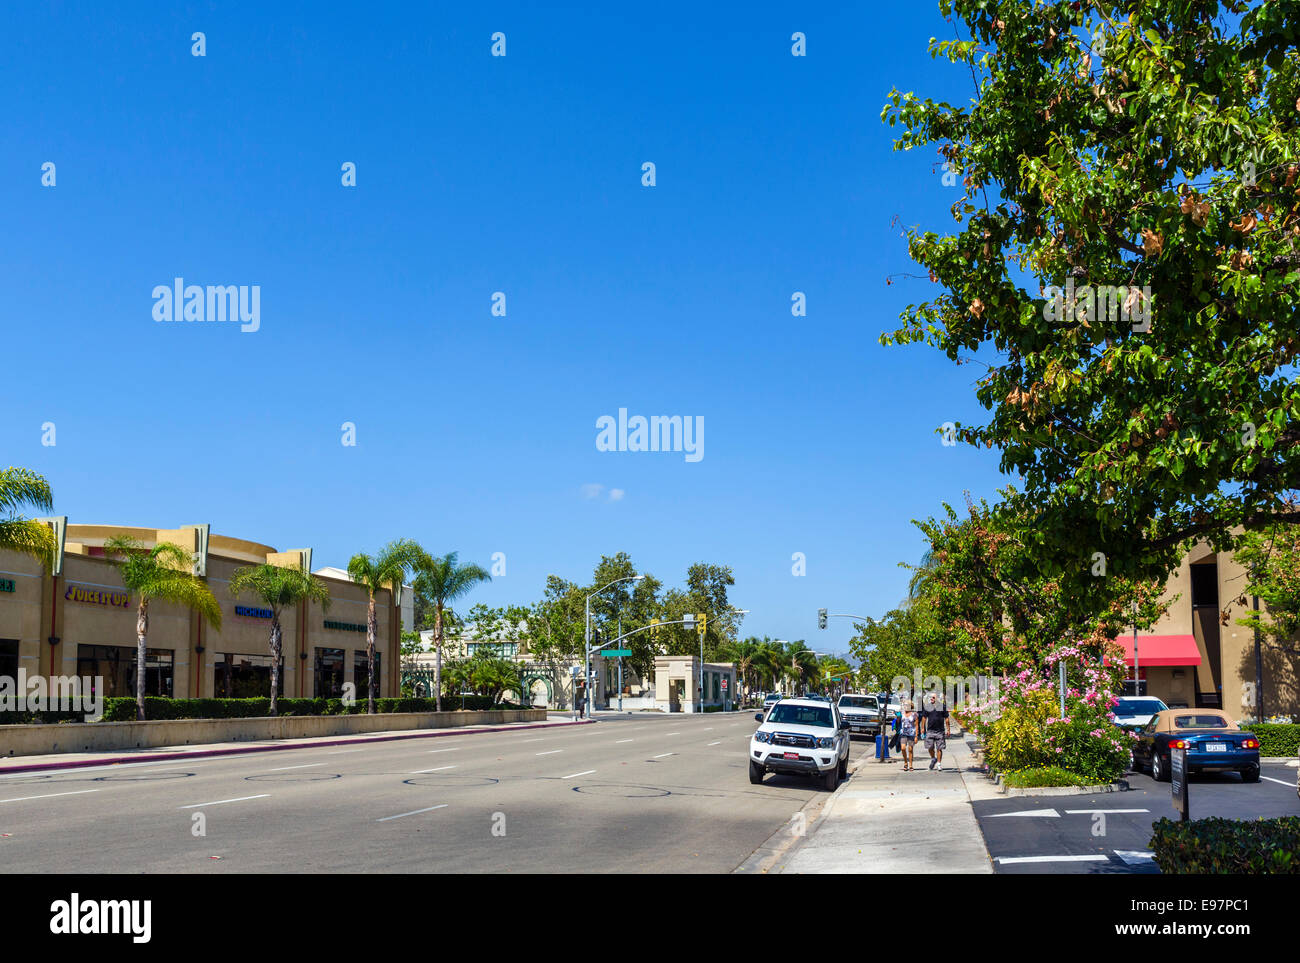 La promenade de la vallée de l'Ouest dans le centre-ville d'Escondido, San Diego County, Californie, USA Banque D'Images